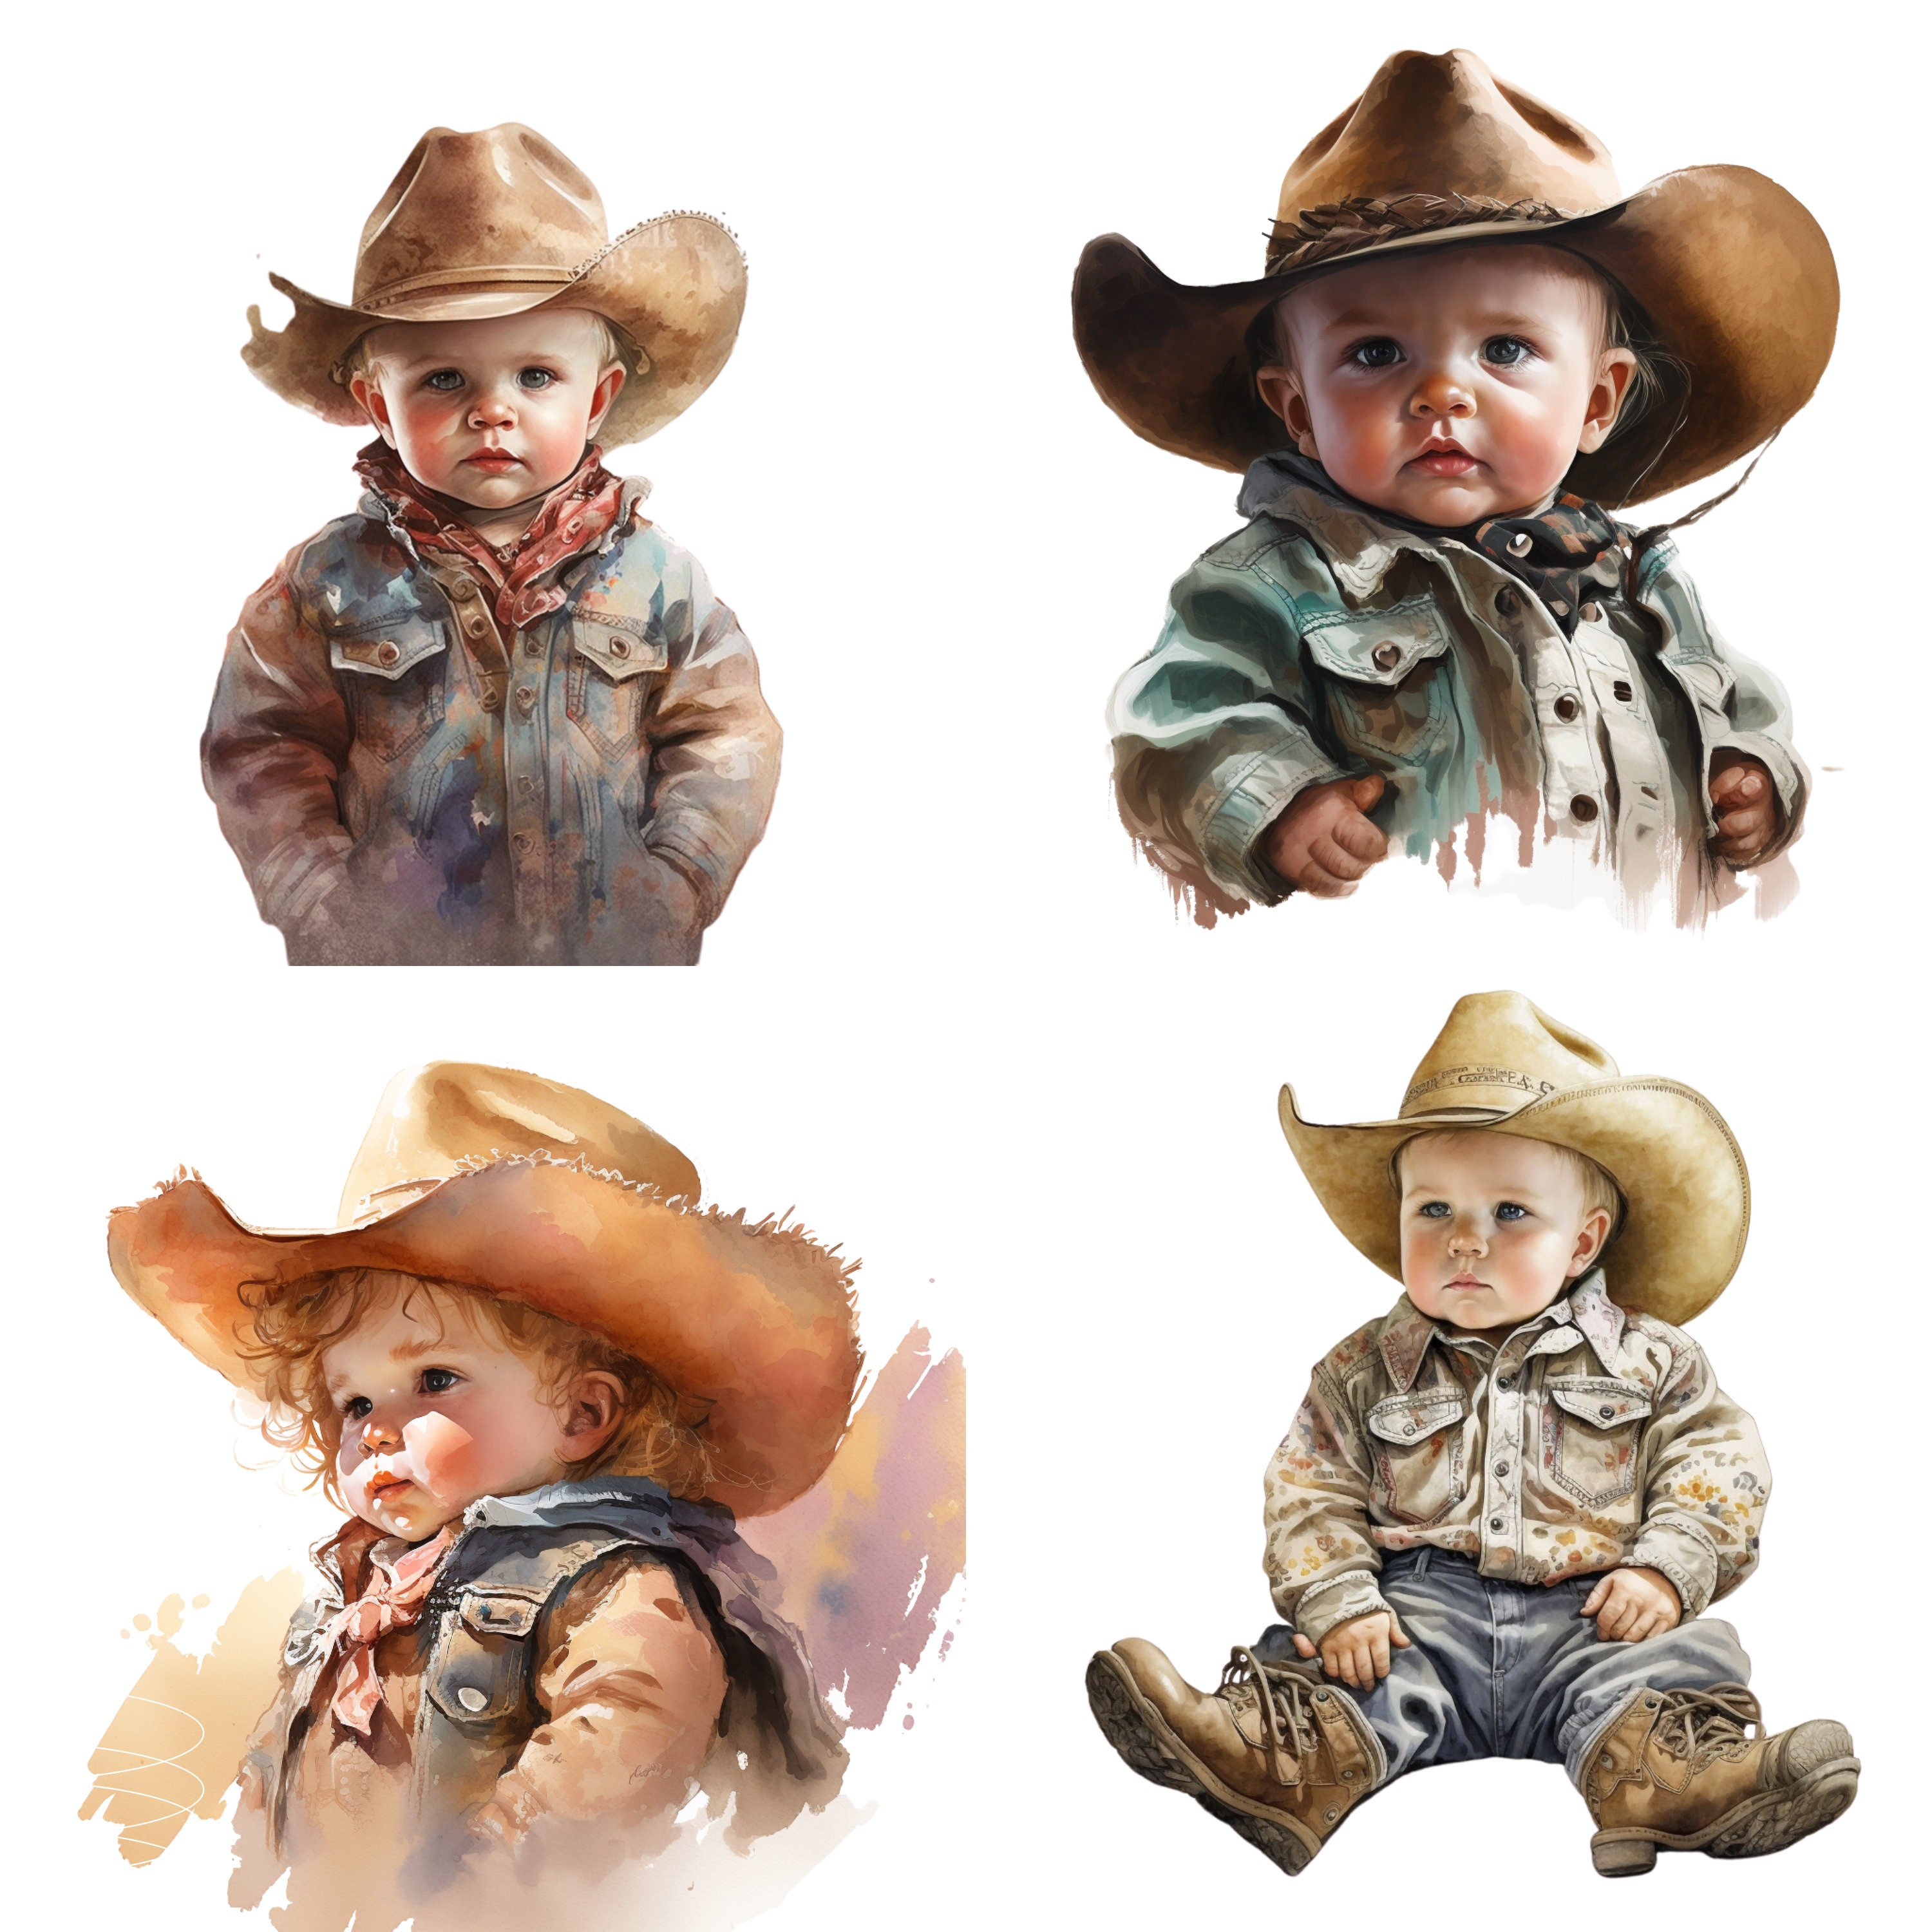 Baby cowboy : r/pics